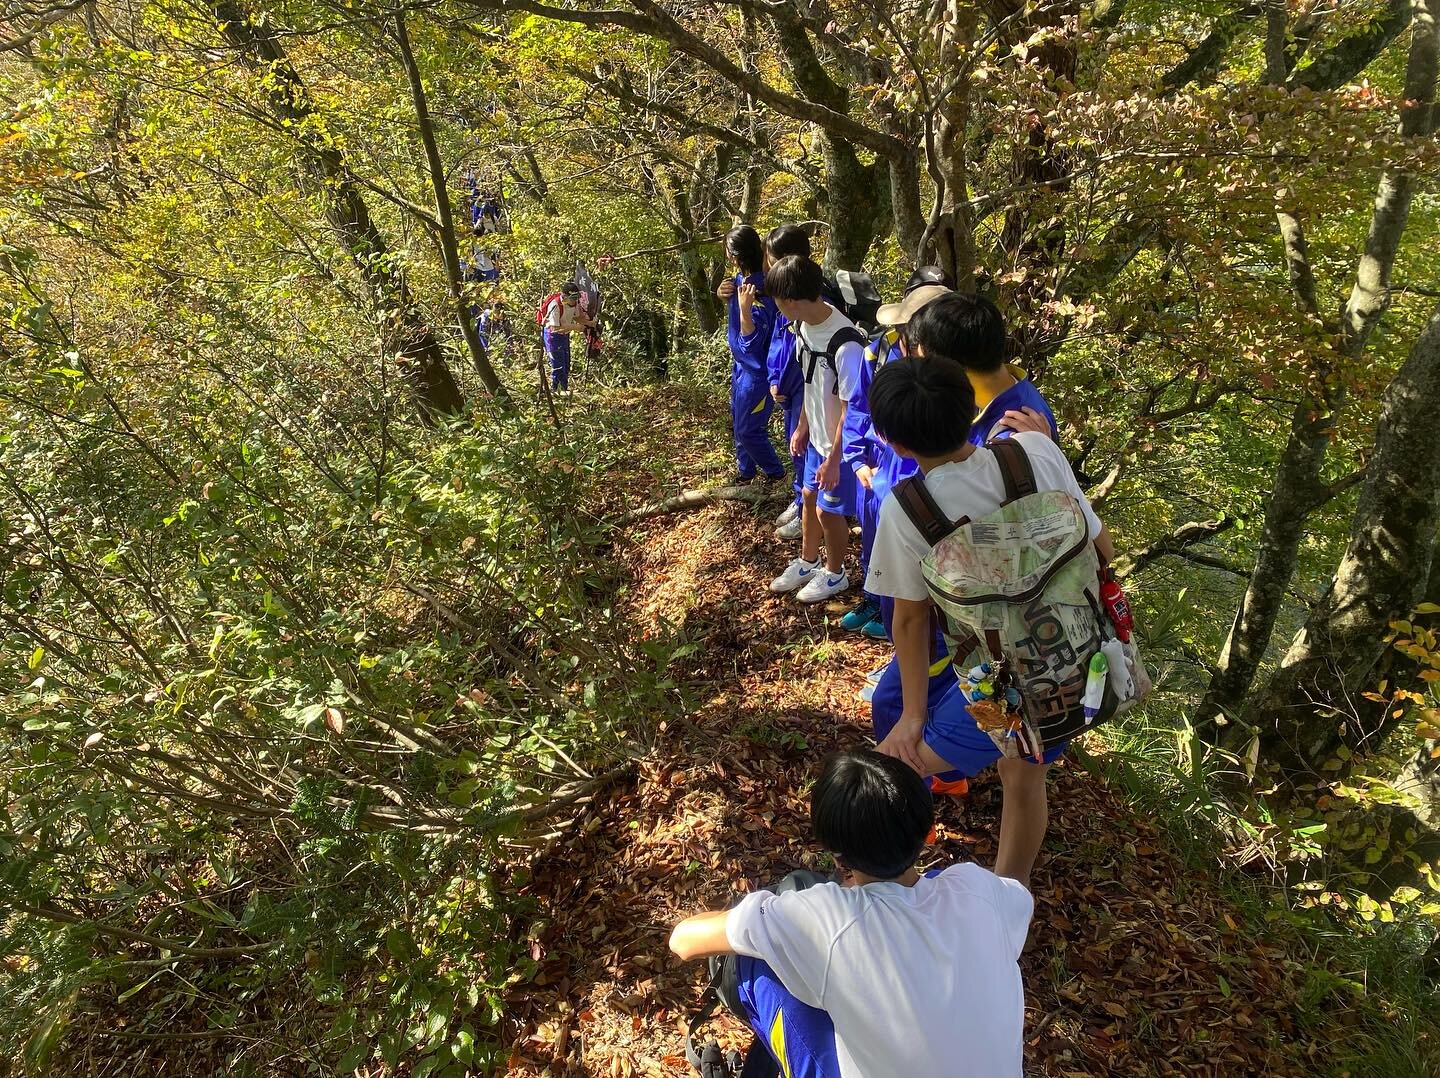 【秋晴れのなか植林活動実施🍁】
十日町市立松代中学校&times;越後まつだい春の陣トレイルラン連携活動として、紅葉狩りハイキング&amp;植林イベントを実施しました！
ハイキングコースは大会コースの最初の5km⛰️スタート地点であるまつだい「農舞台」をスタートしてゴールであるやぶこざきキャンプ場まで、皆んなで元気に歩きました！

雨天が多い10月でしたが、今日は雲ひとつない快晴☀️尾根を上がりきった見晴らし場所まで出ると、「すごい絶景ー！」の声！本日のハイキングで自分たちが暮らす里山に素晴ら